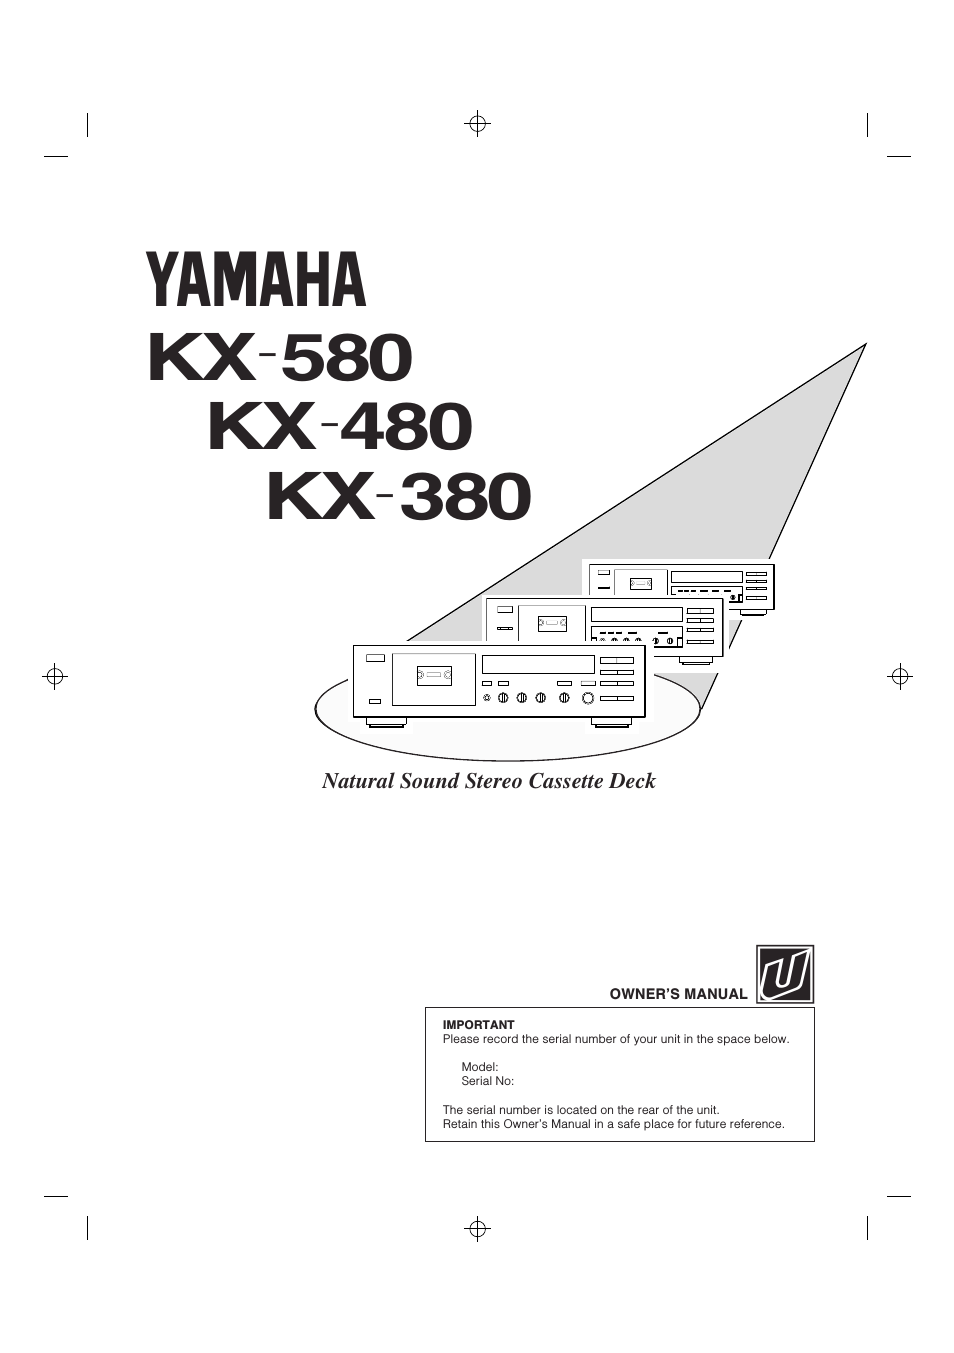 KX 380